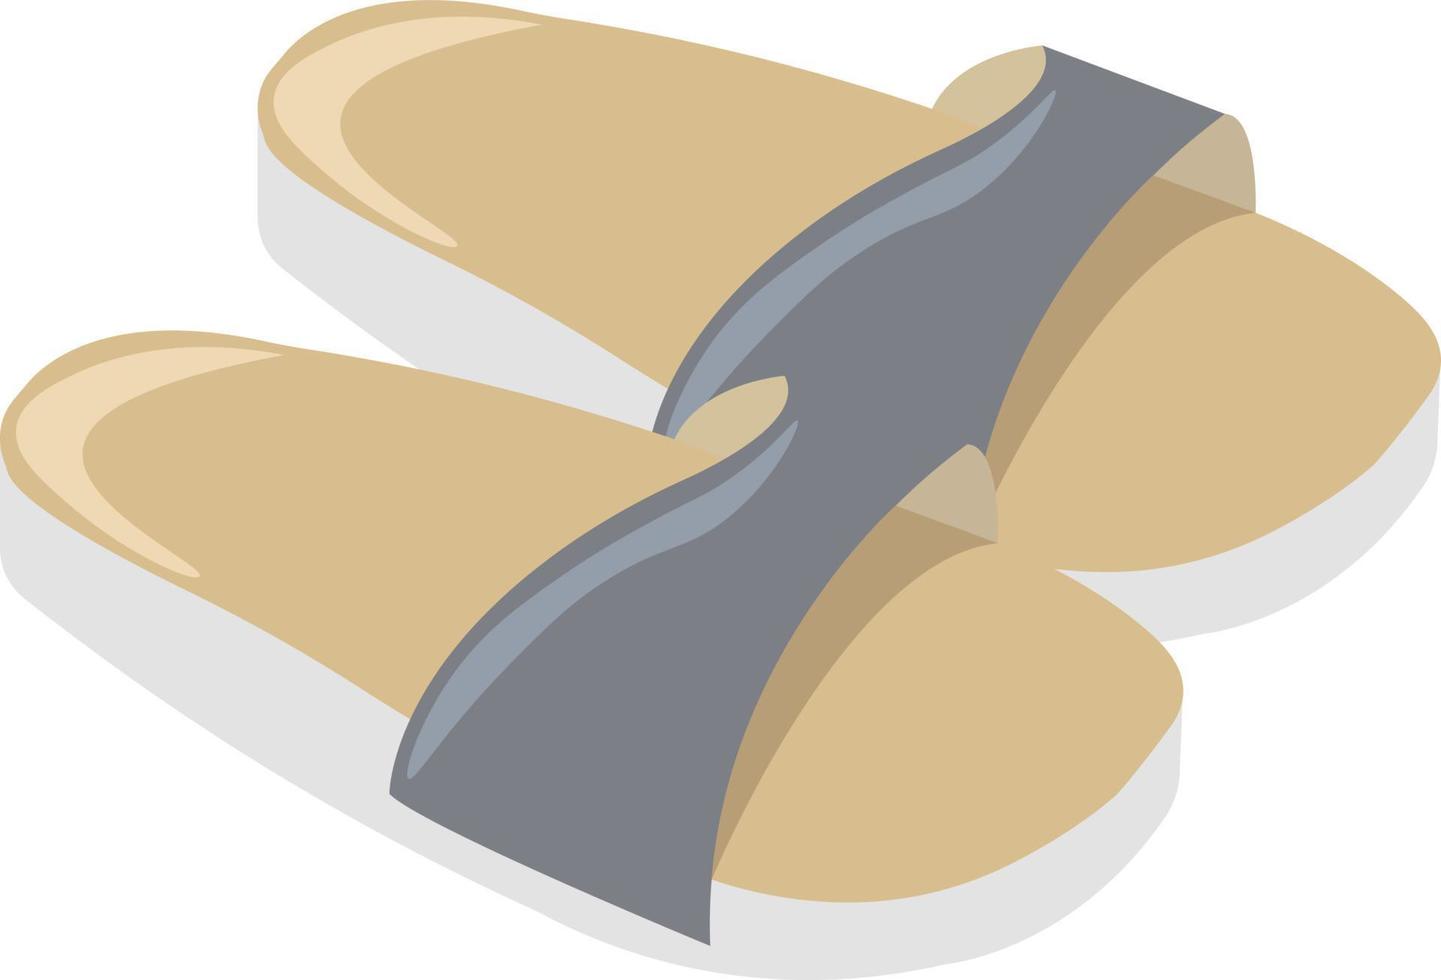 Summer slippers, illustration, vector on white background.